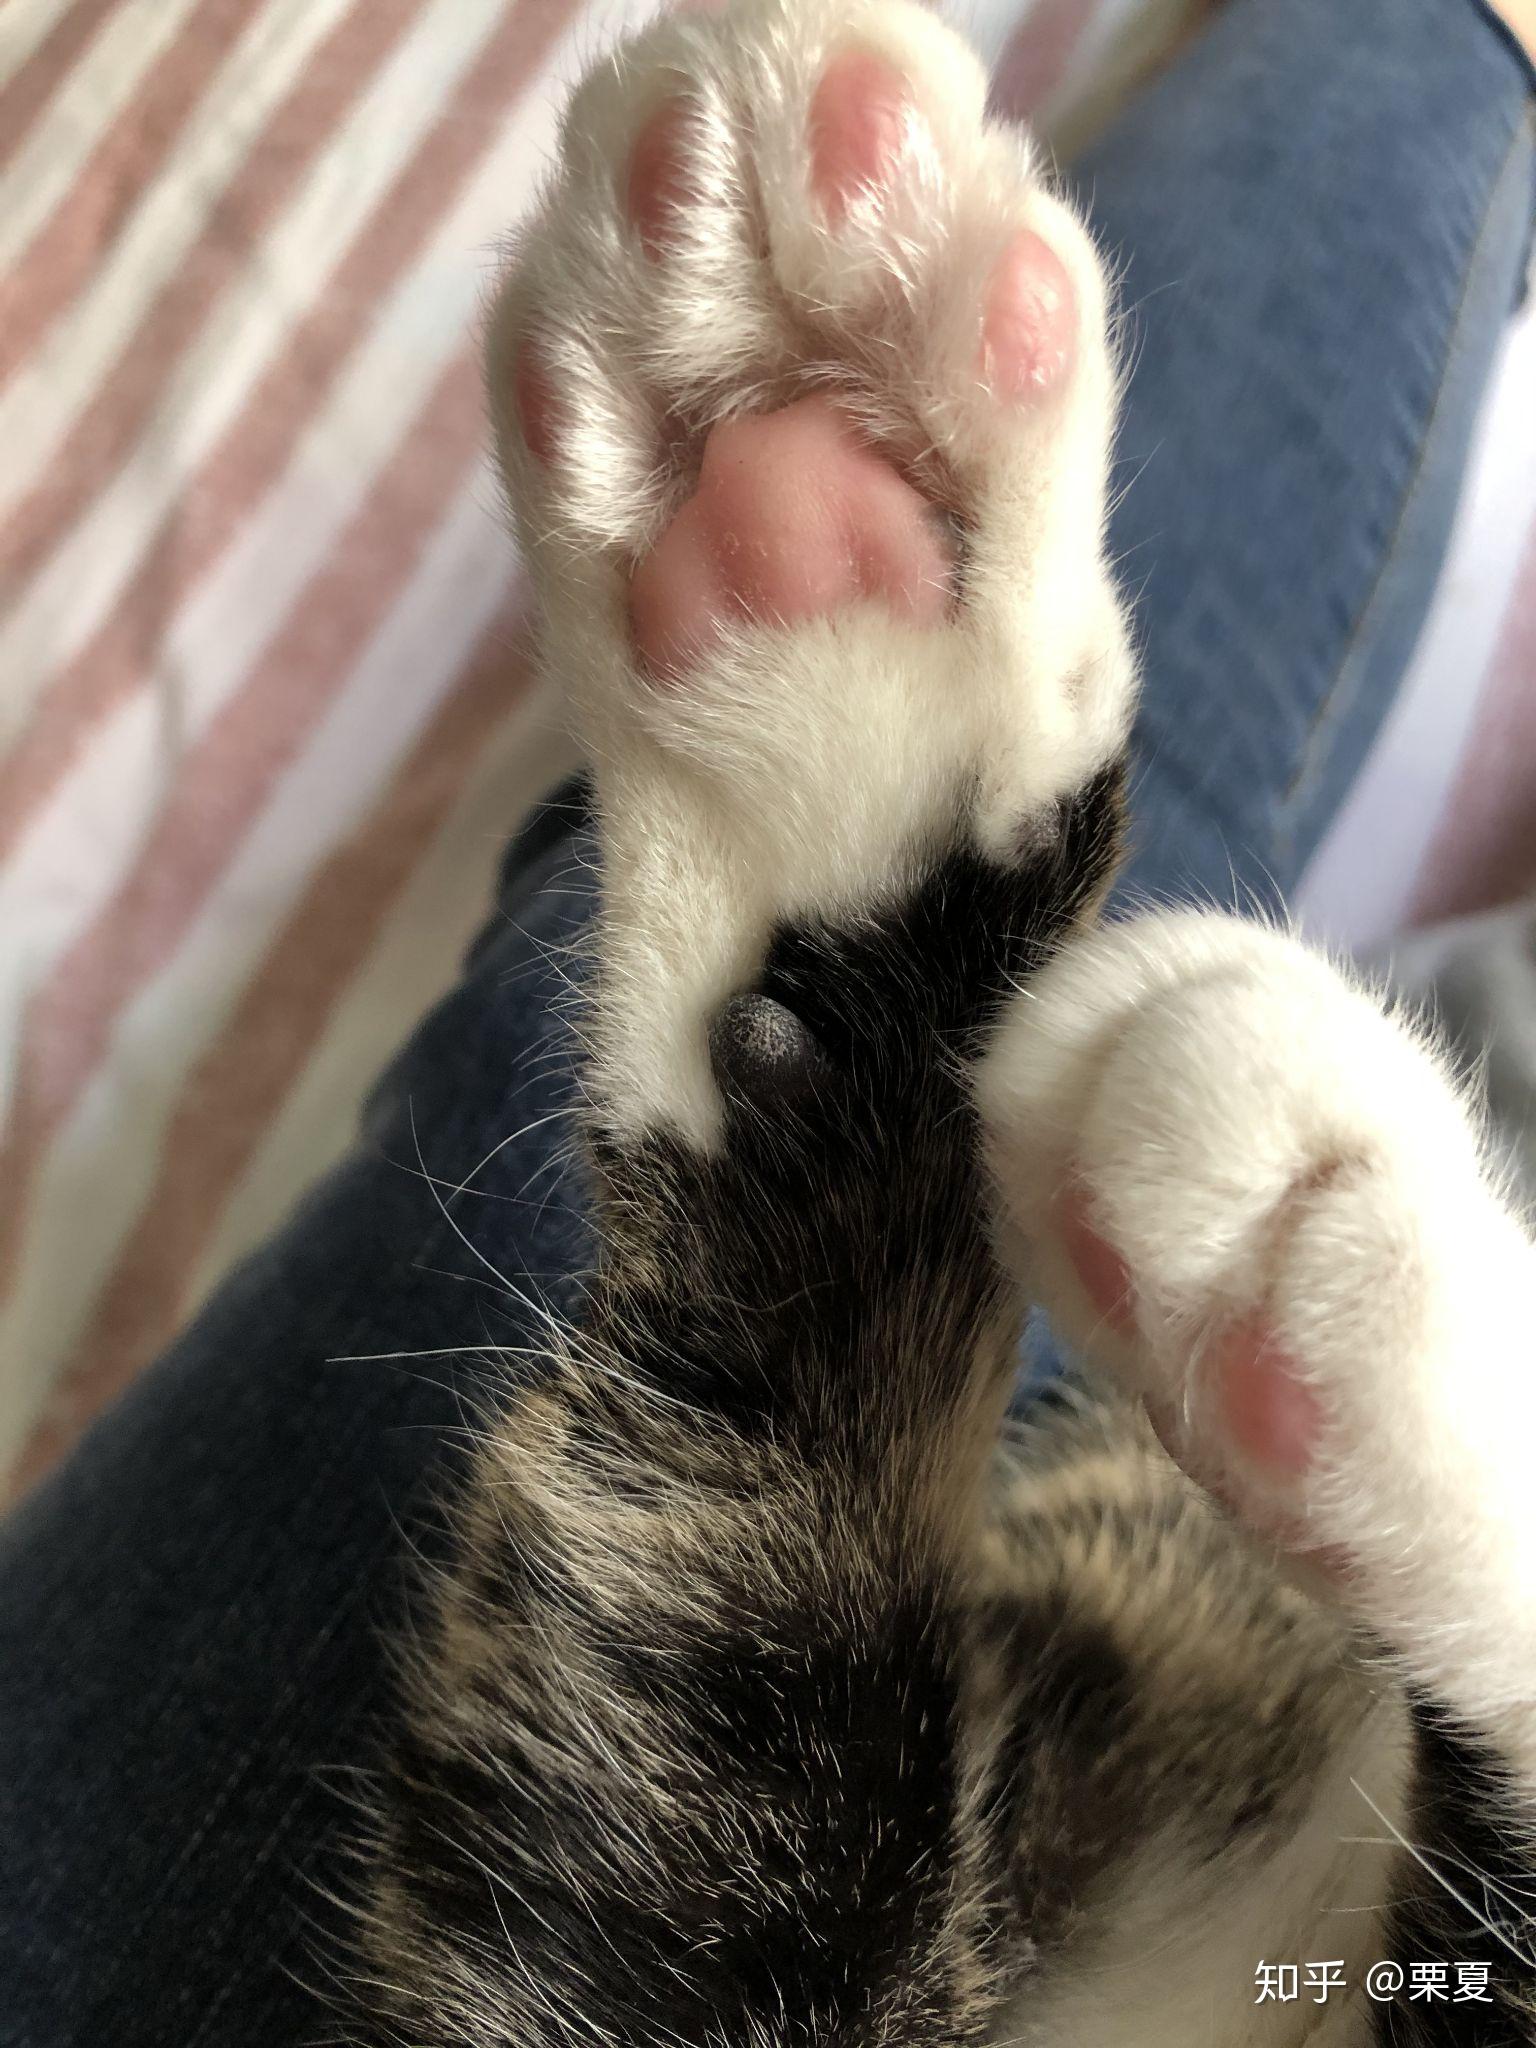 猫咪的爪子可以多可爱?